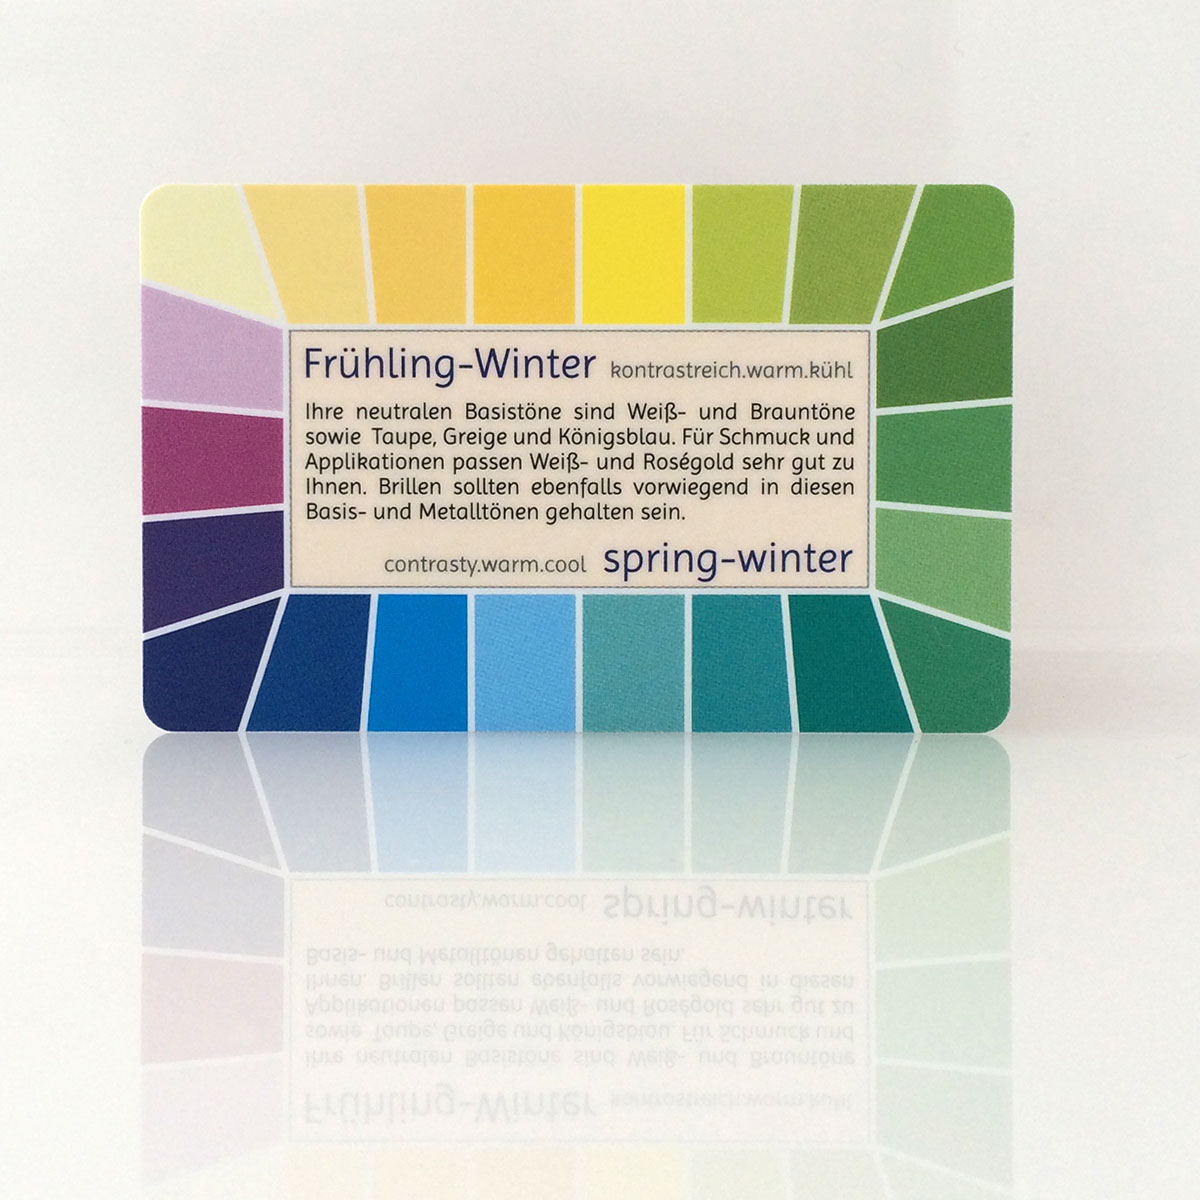 Farbpass Frühling-Winter zur Farbberatung, Vorderseite - Loop | Komood